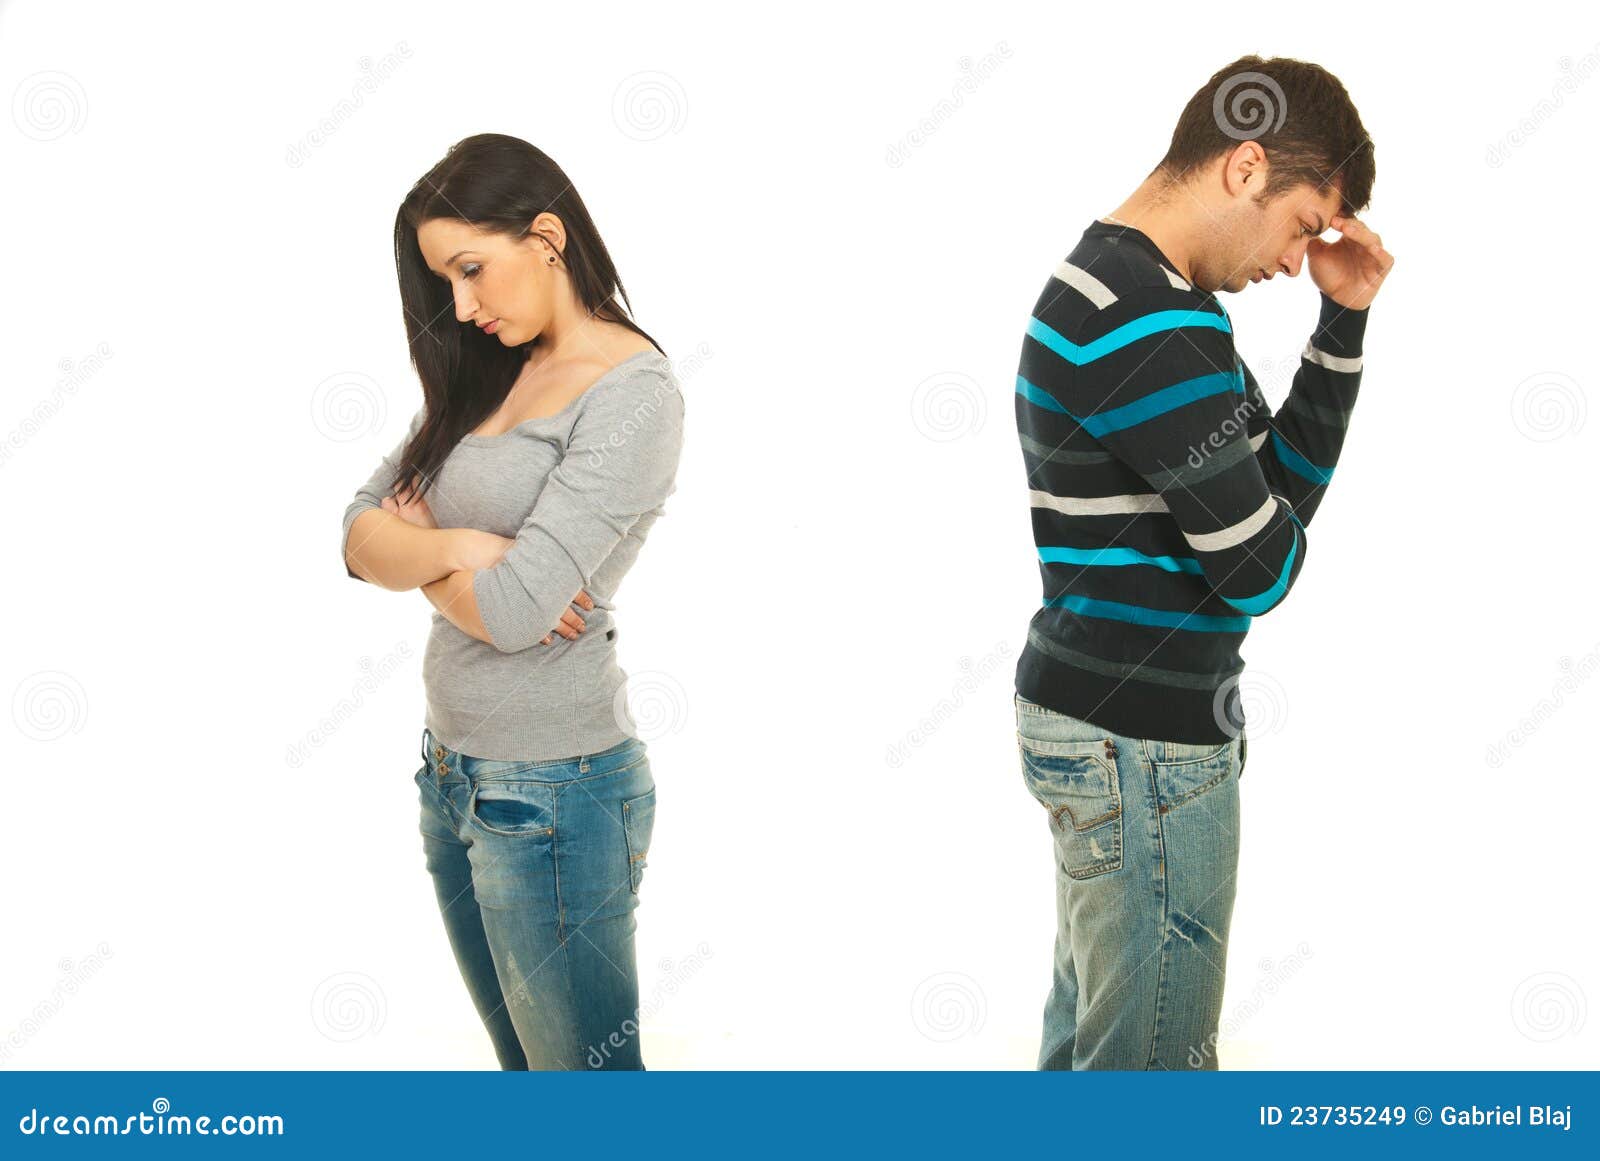 sad couple having conflict